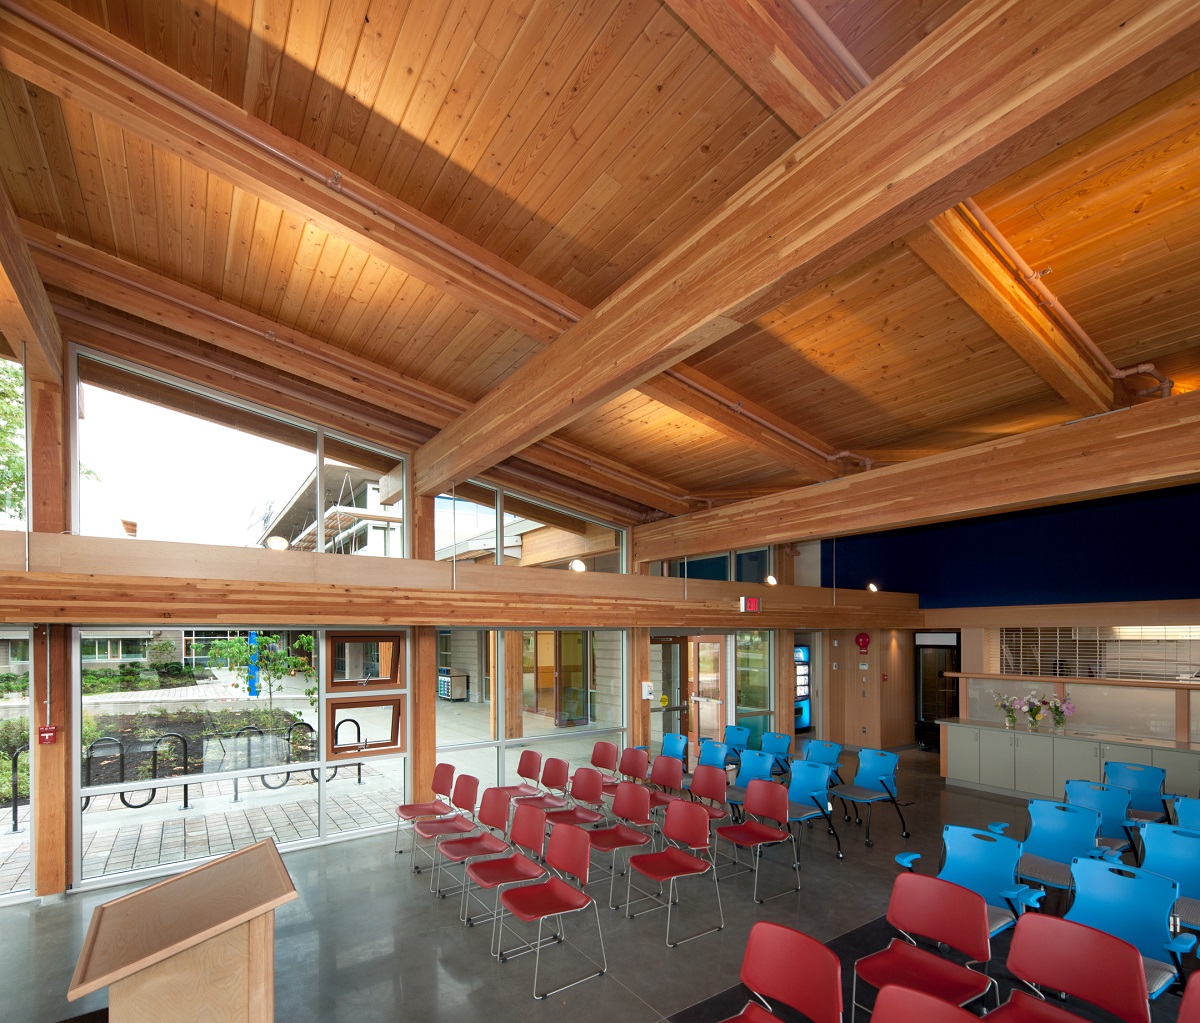 胶合木(胶合木)梁支撑舌和槽屋顶木材都展示在温哥华岛大学考伊肯校区多层主礼堂的白天室内图像中，配有红色和蓝色的塑料椅子